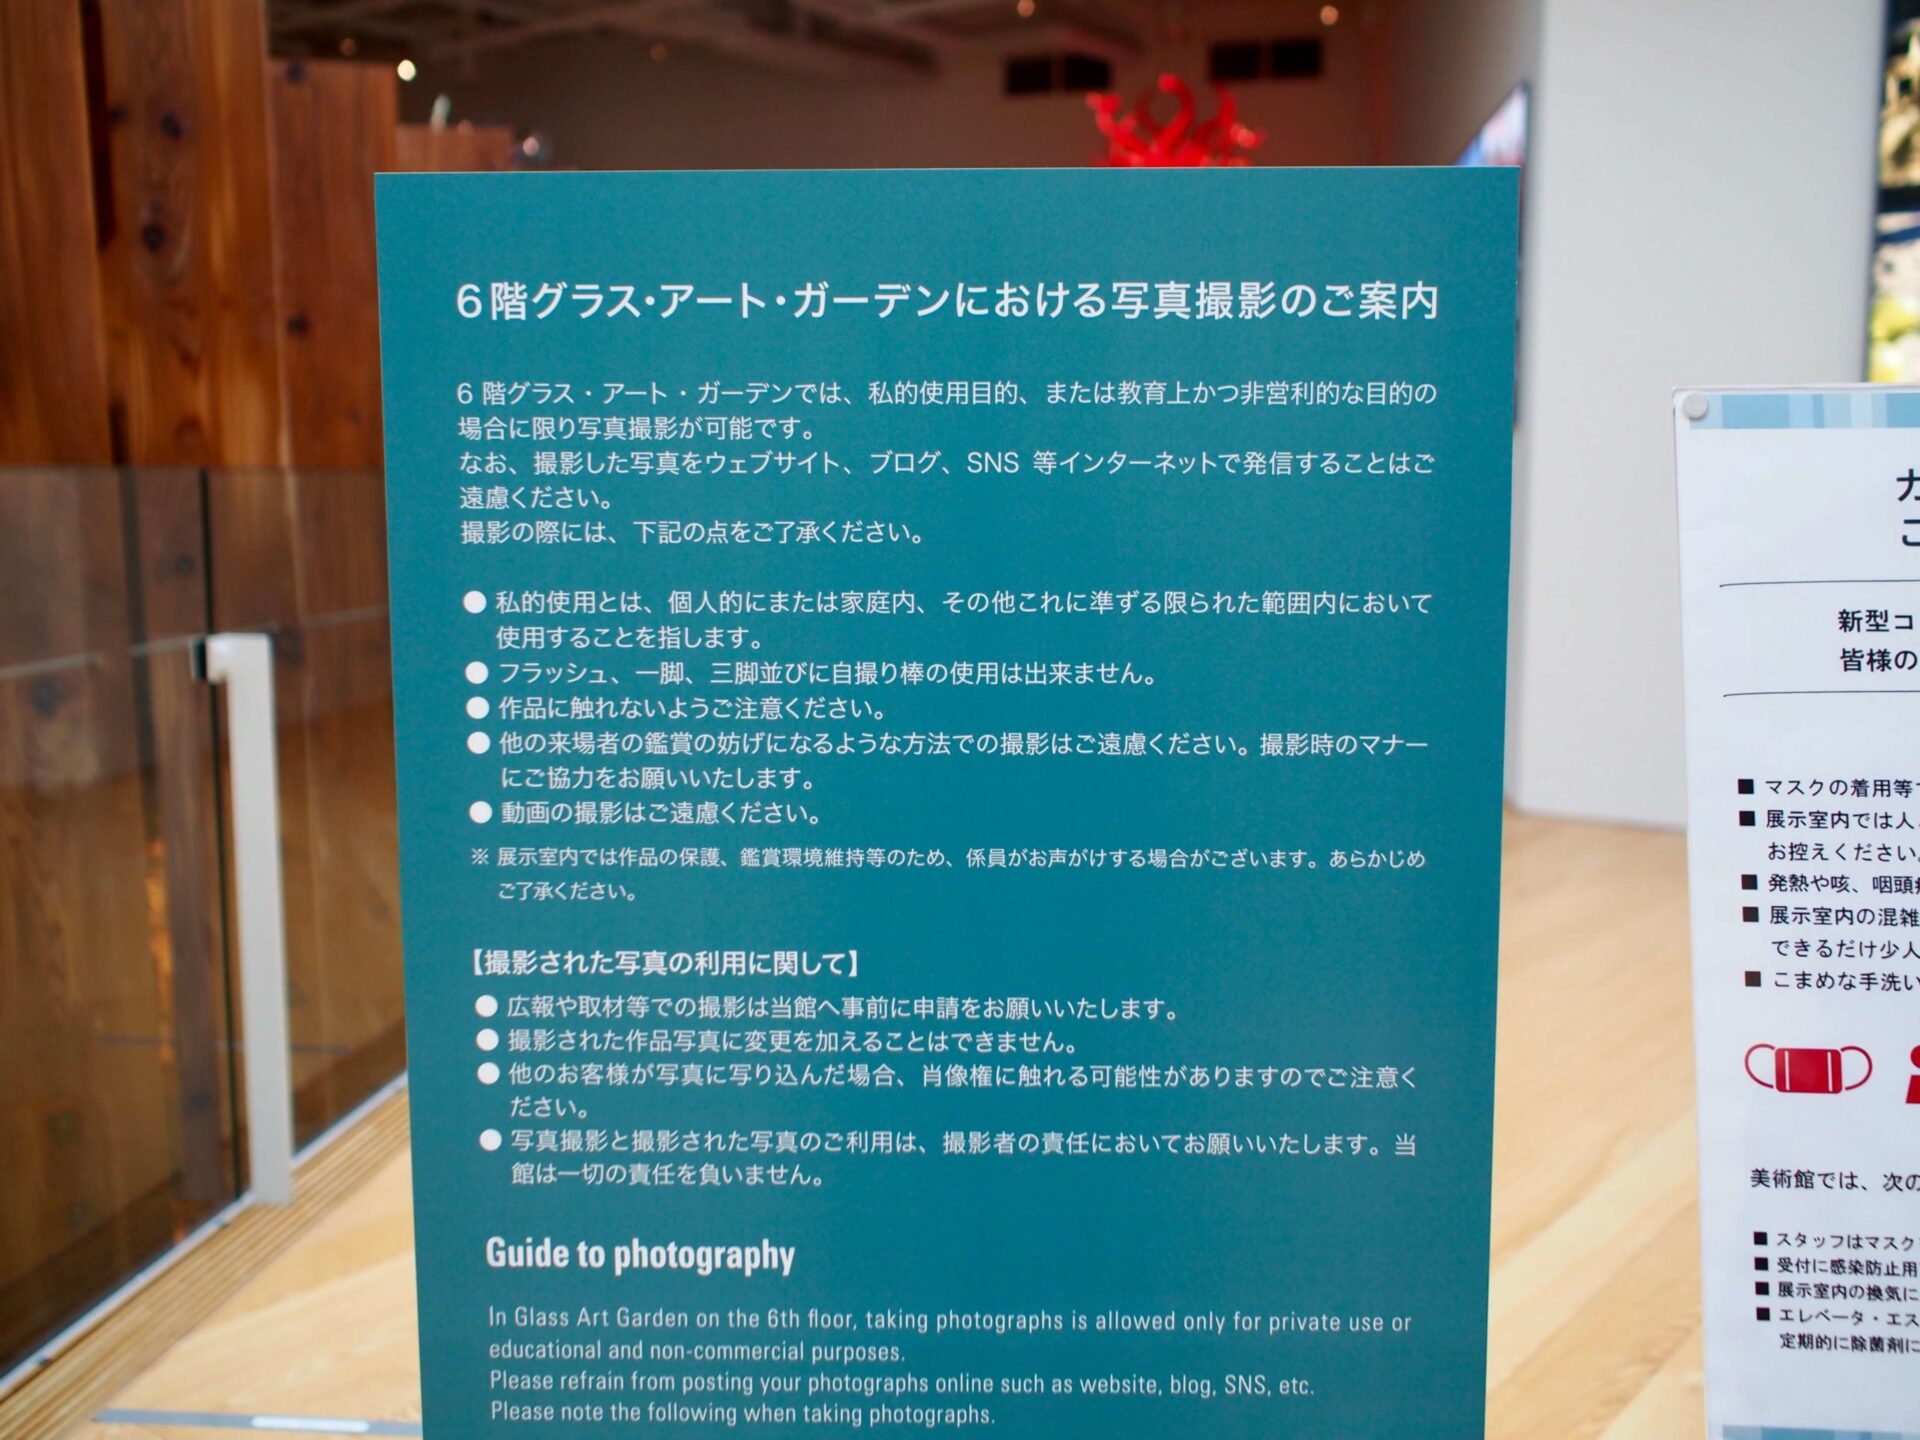 富山市ガラス美術館の写真撮影について